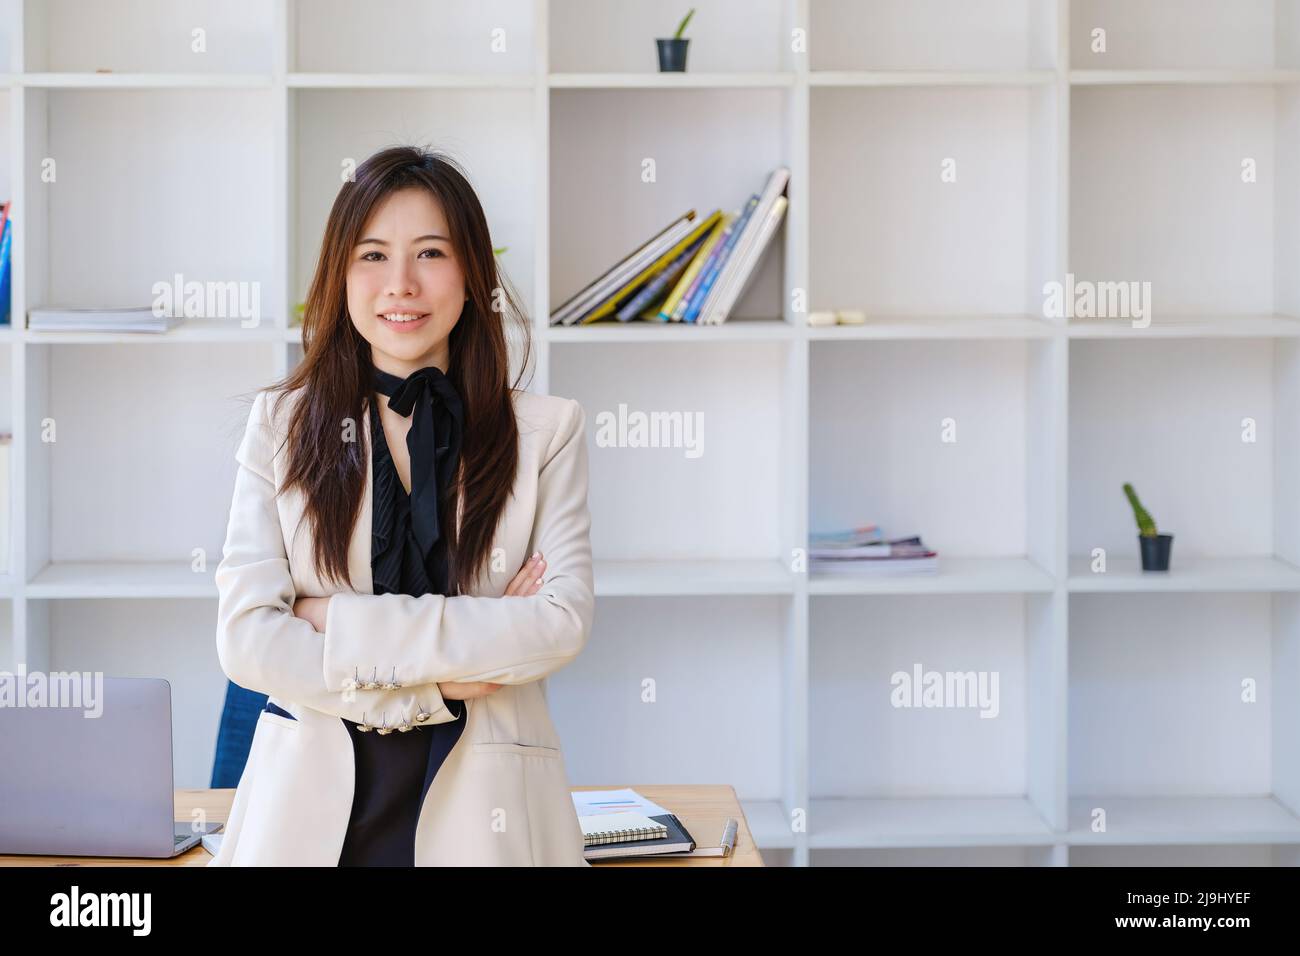 Affaires personnelles, propriétaire d'affaires, loisirs, plaisir du travail, portrait d'une femme asiatique souriant joyeusement à la maison Banque D'Images